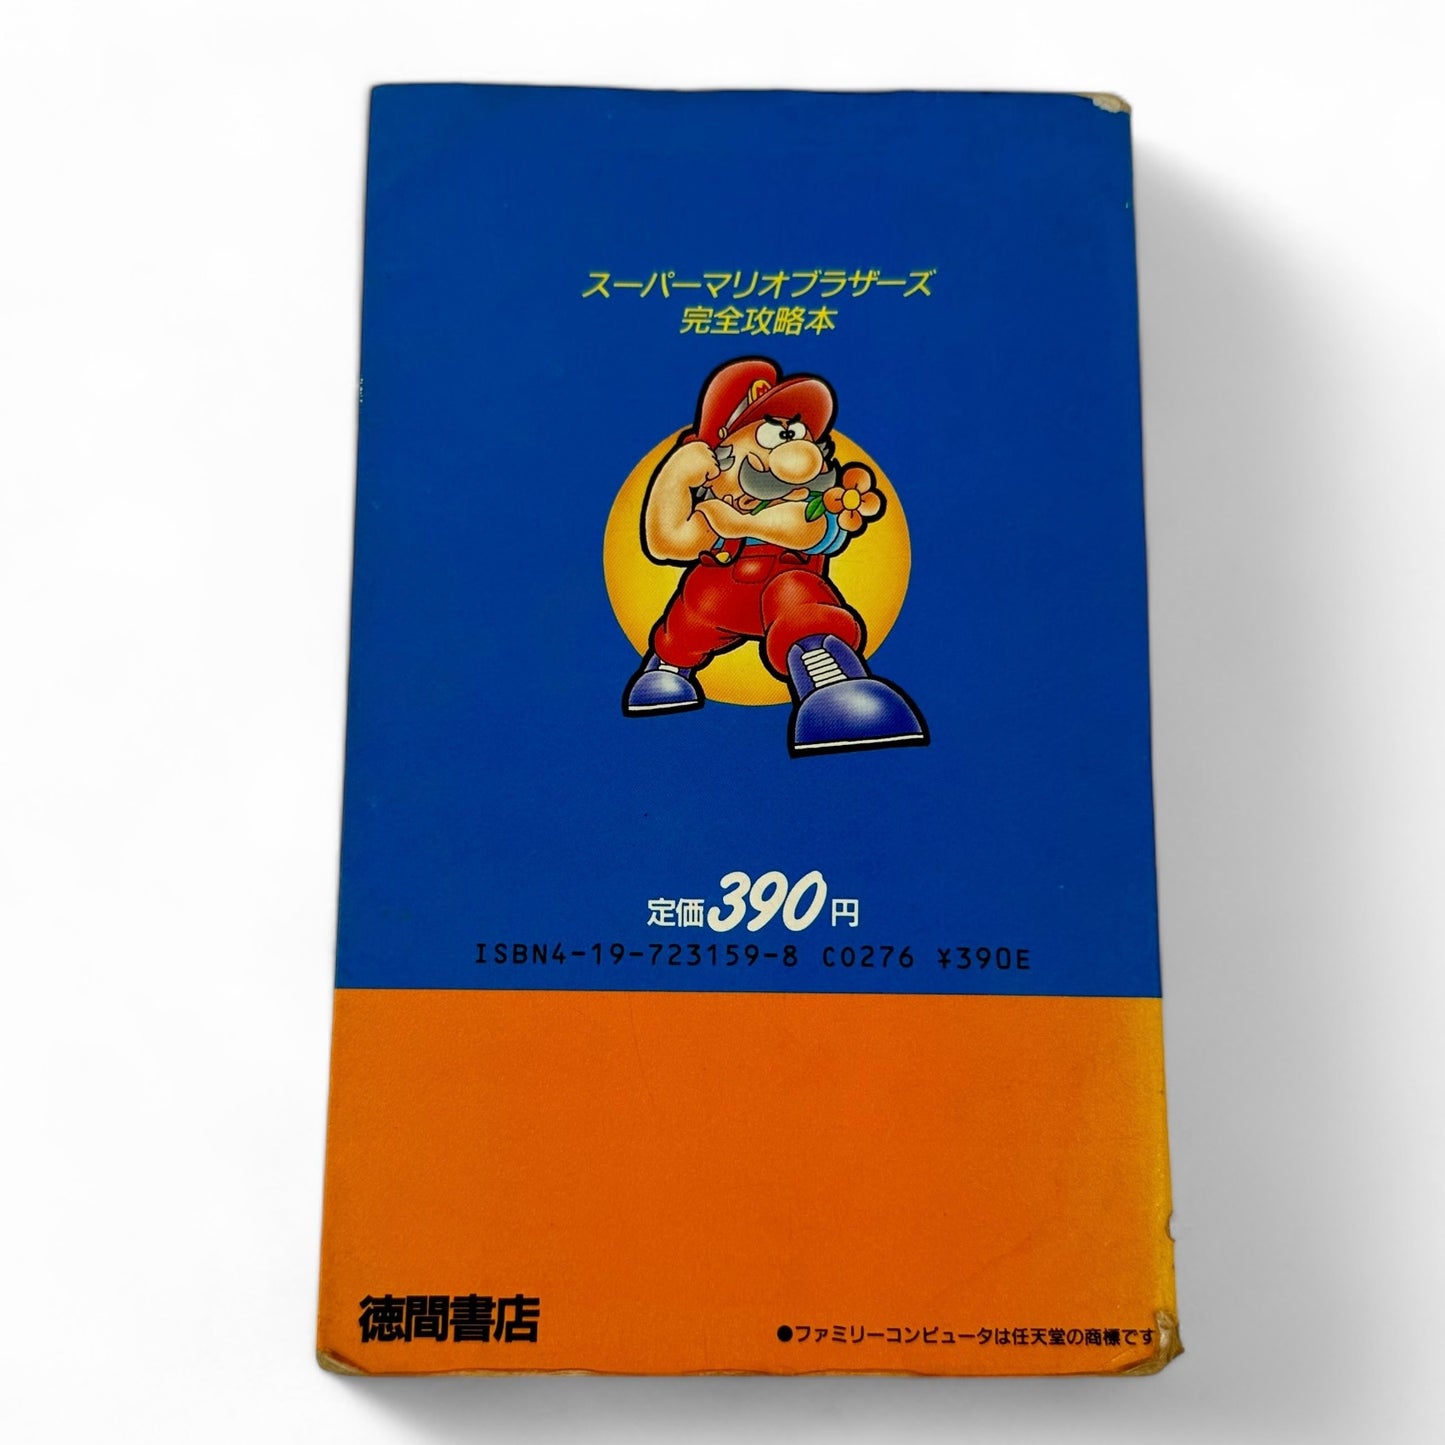 Guide de Super Mario Bros.